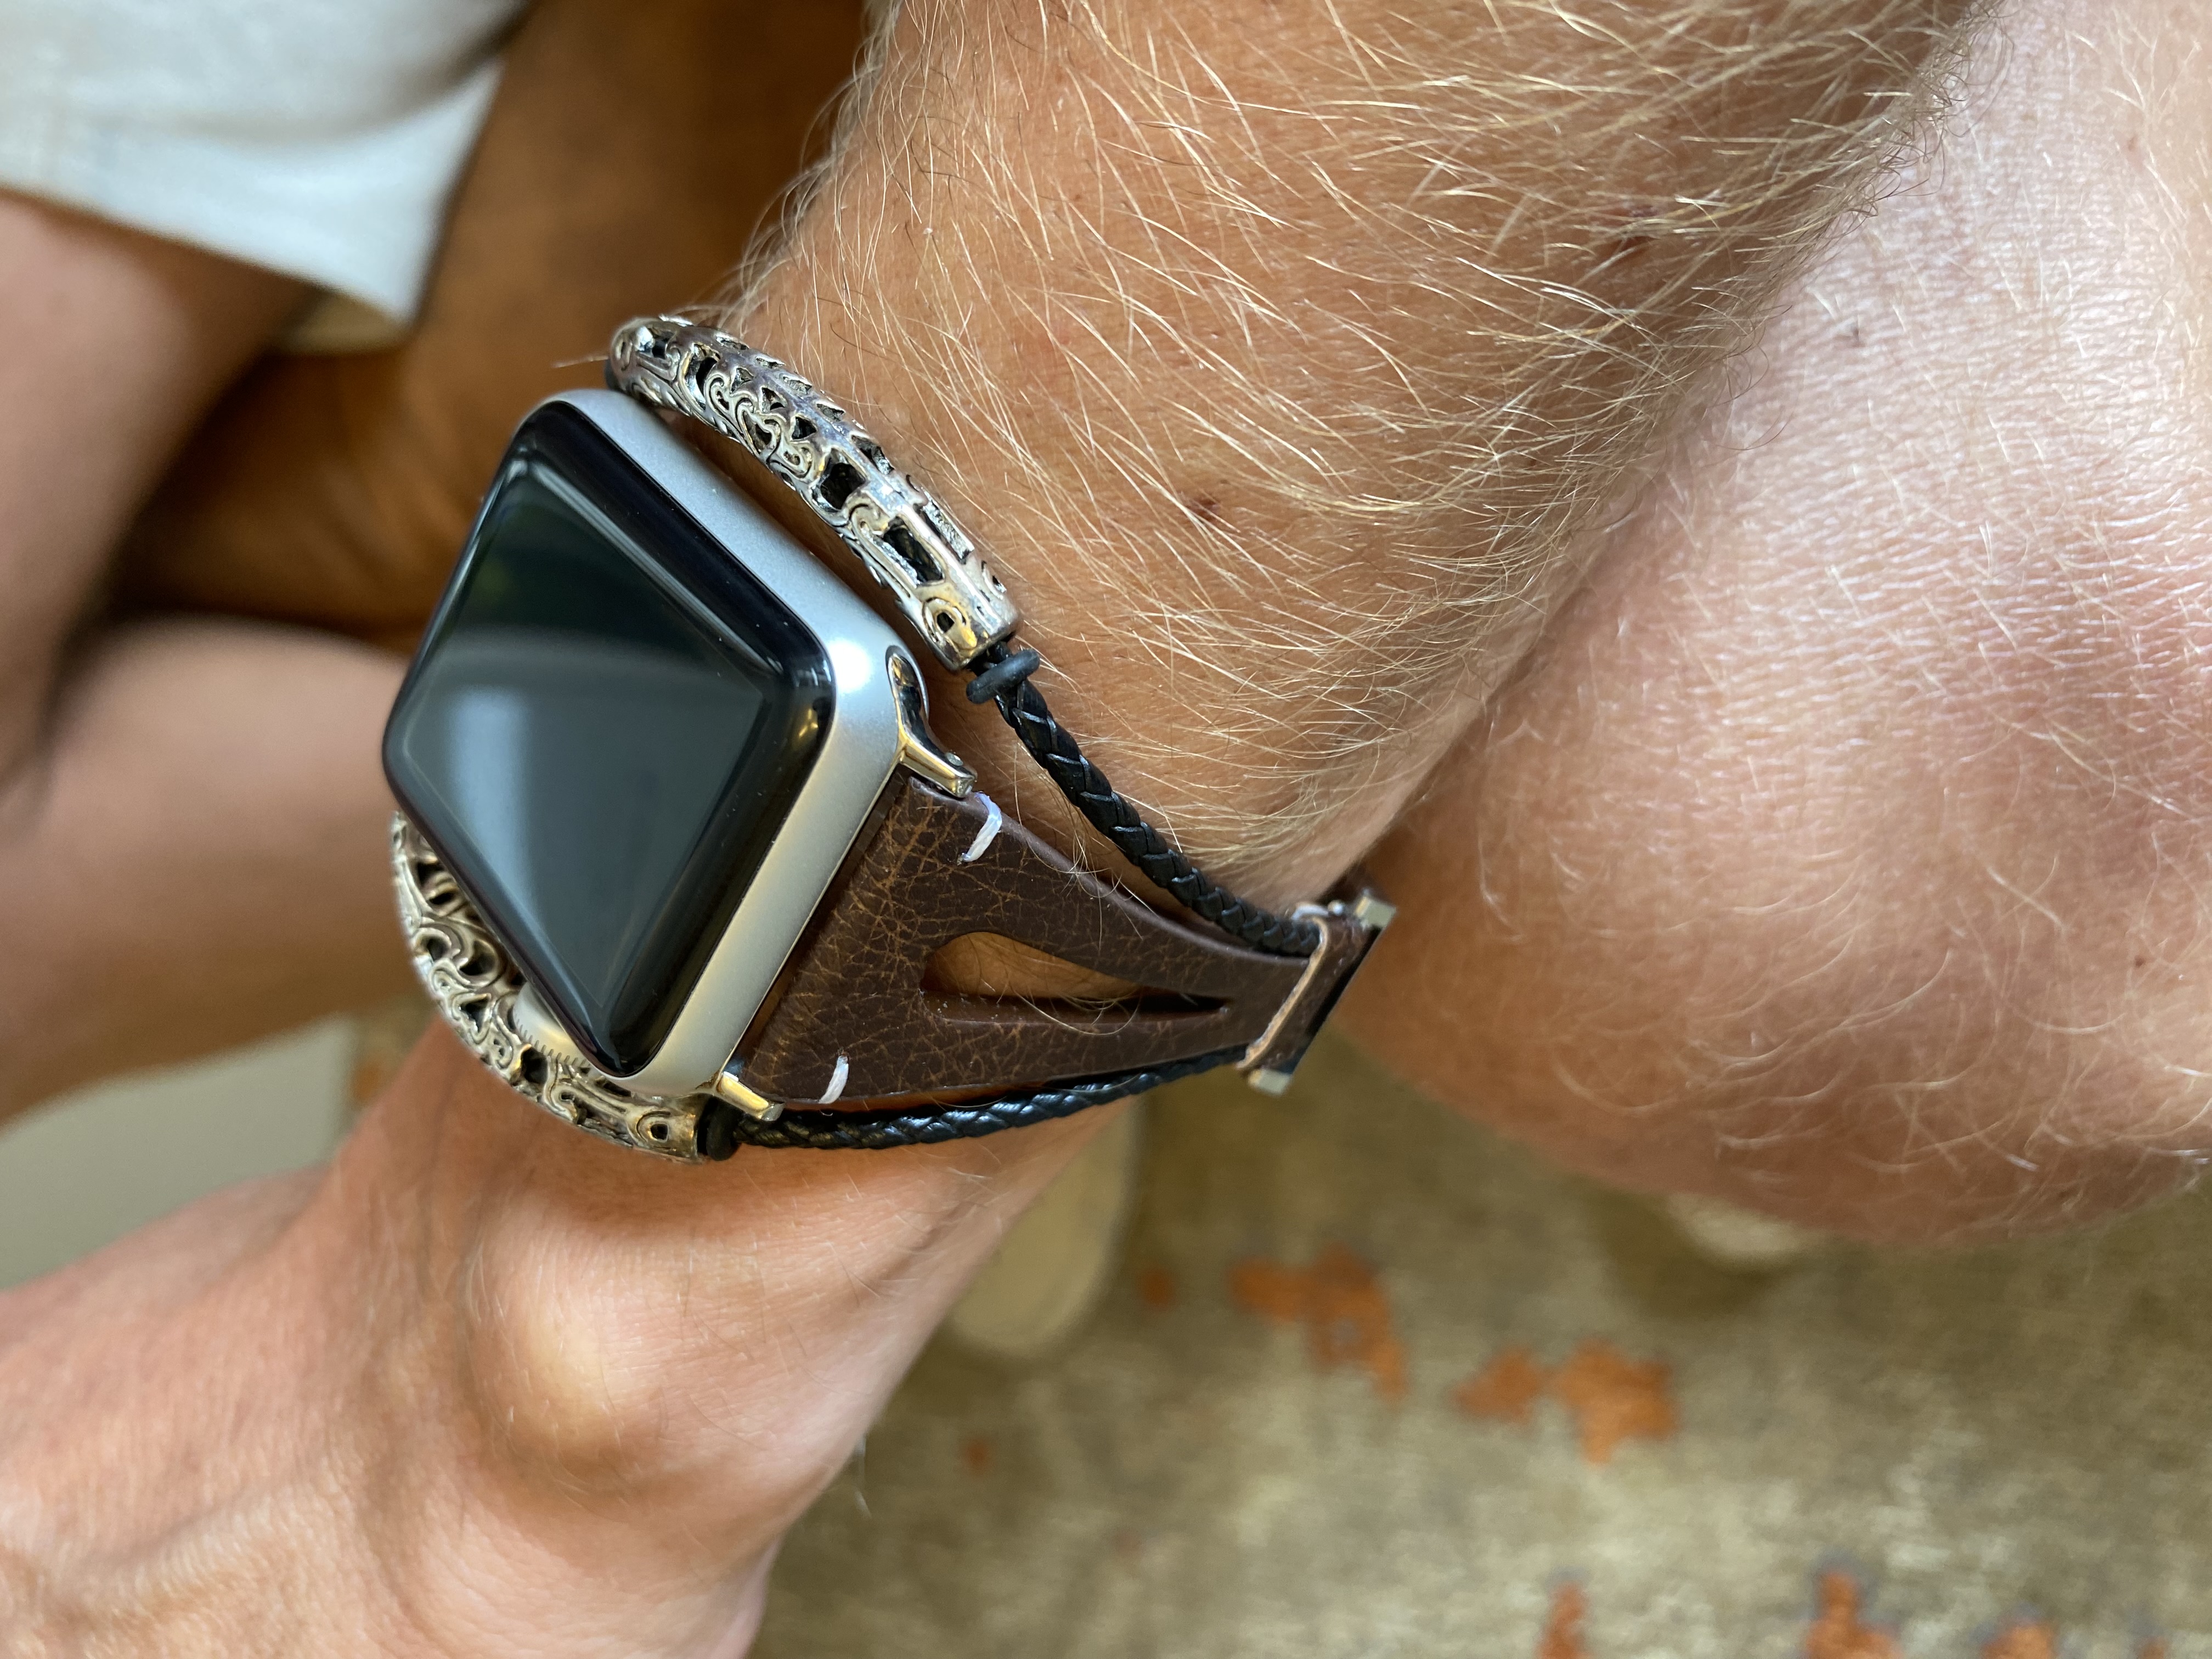 Correa de joyería de piel robusto para el Apple Watch - marron oscuro